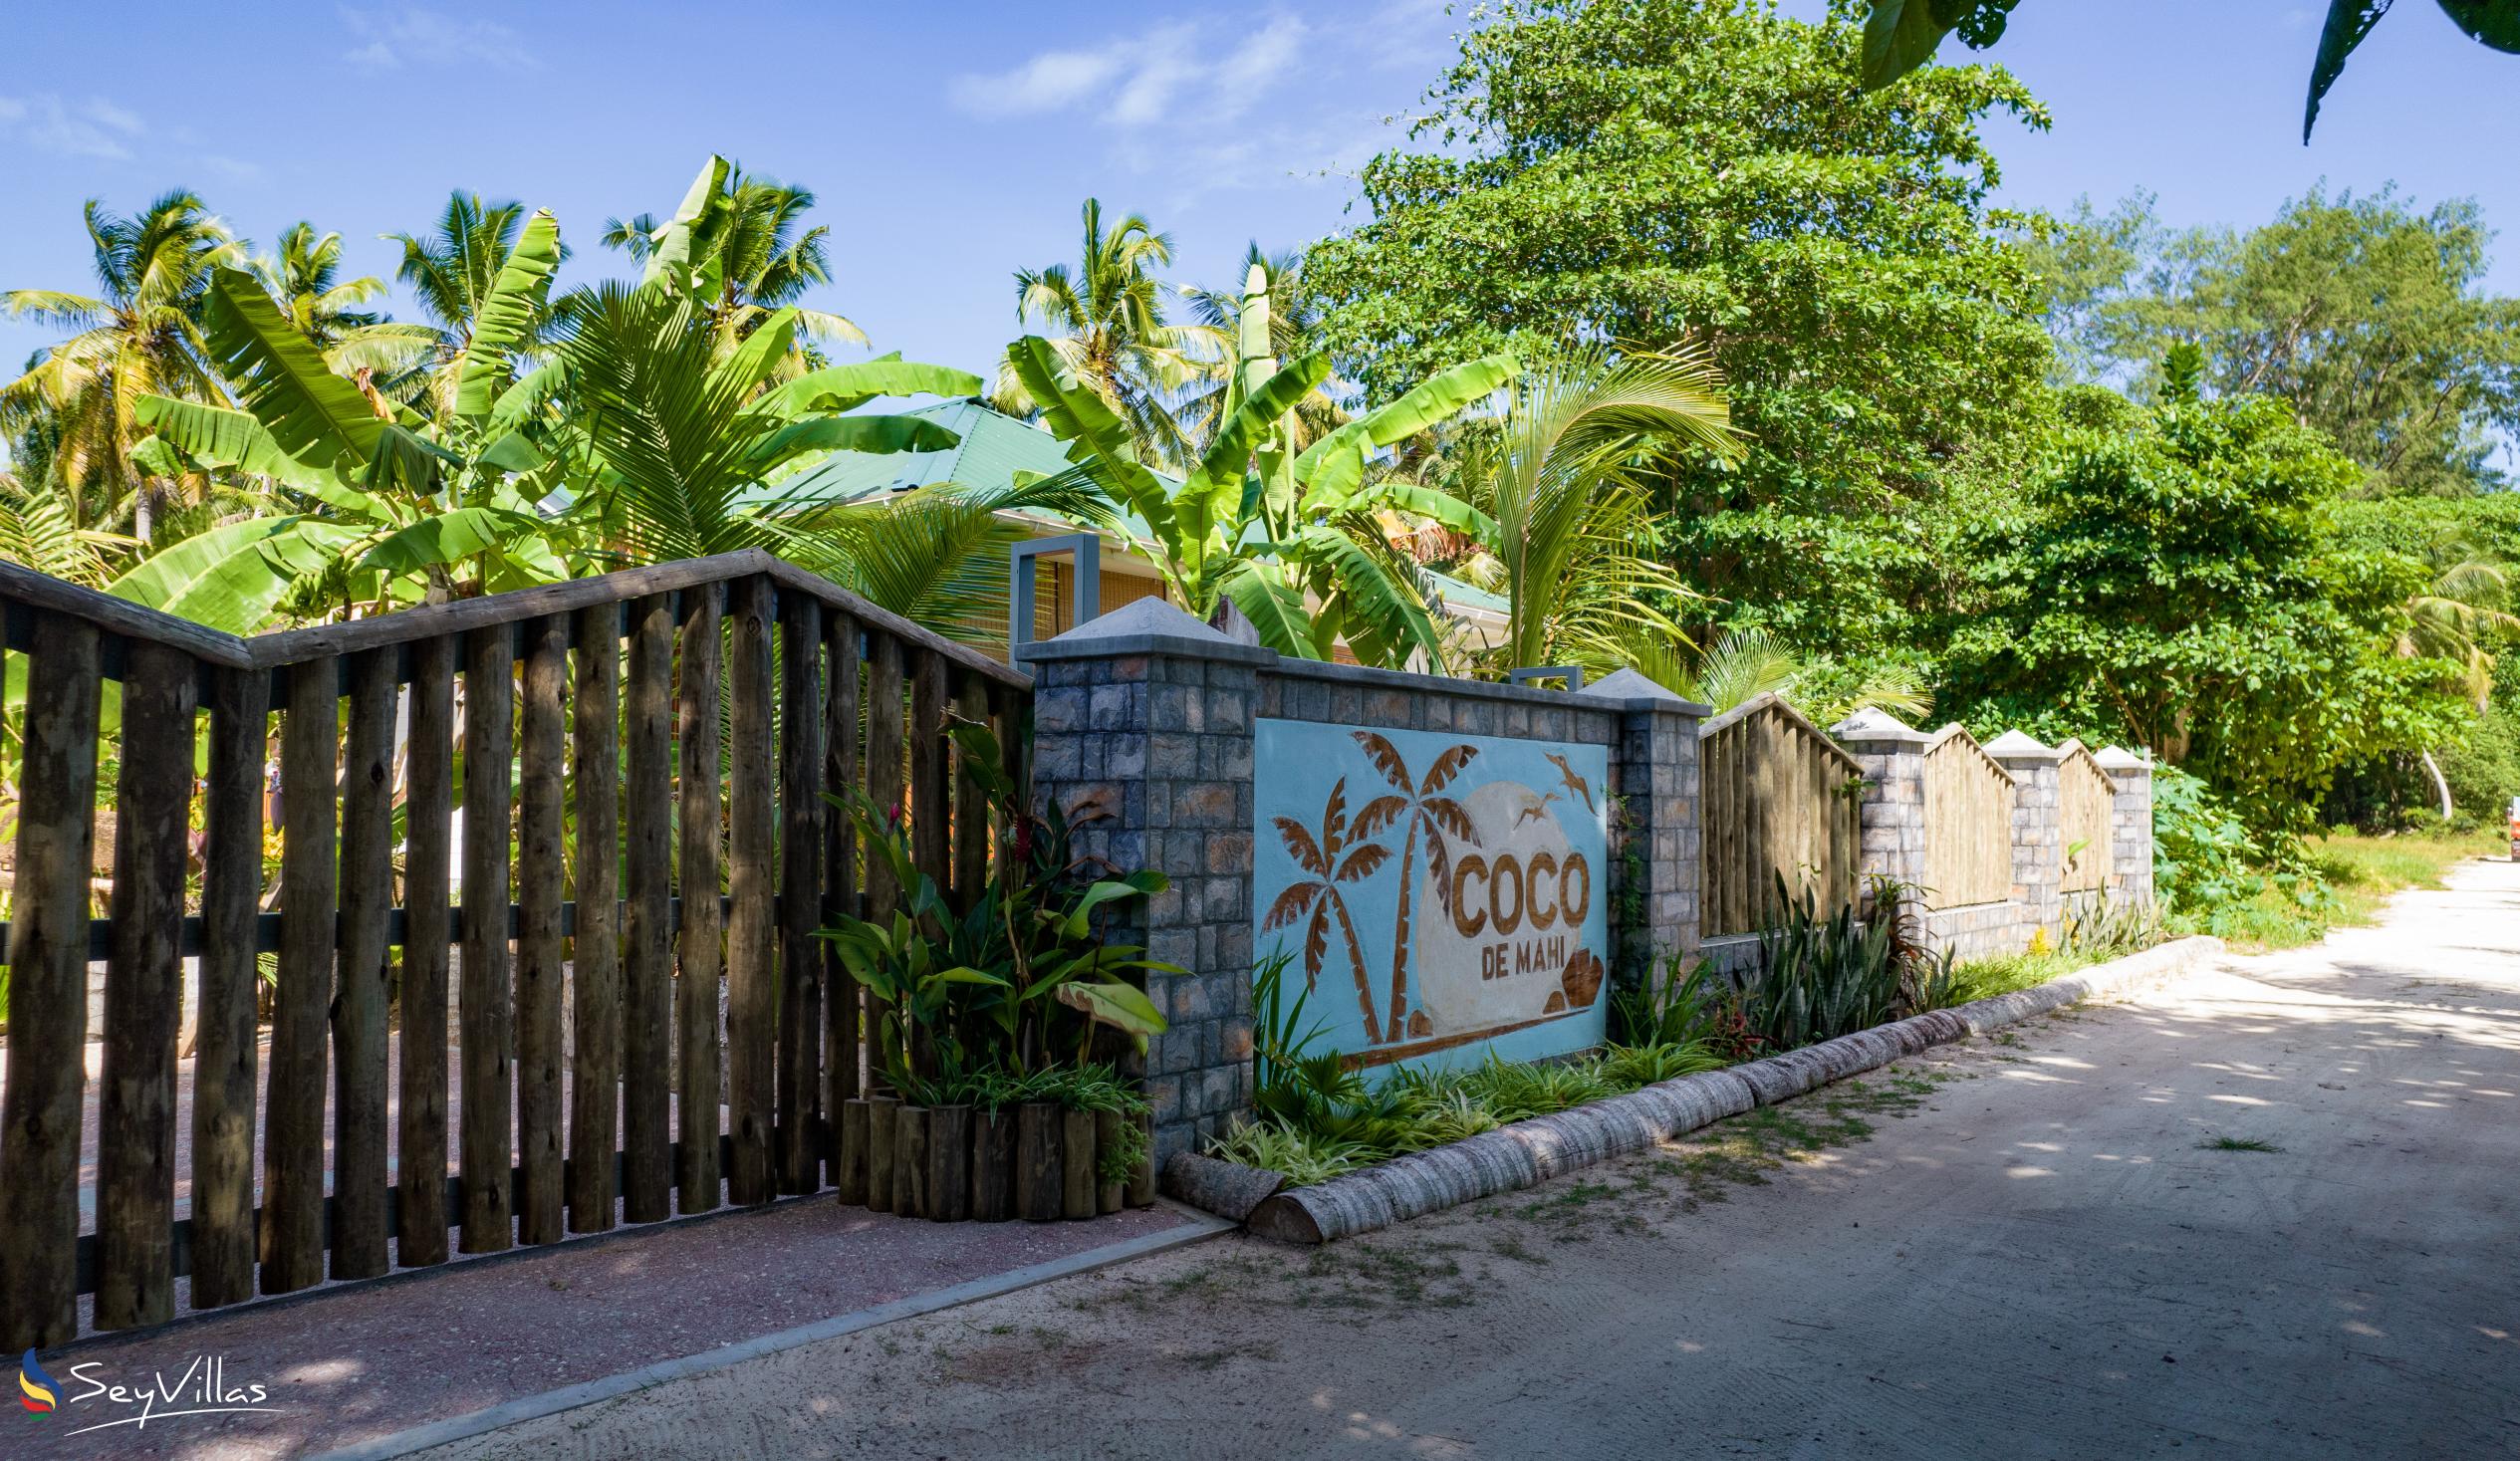 Foto 31: Coco de Mahi - Lage - La Digue (Seychellen)